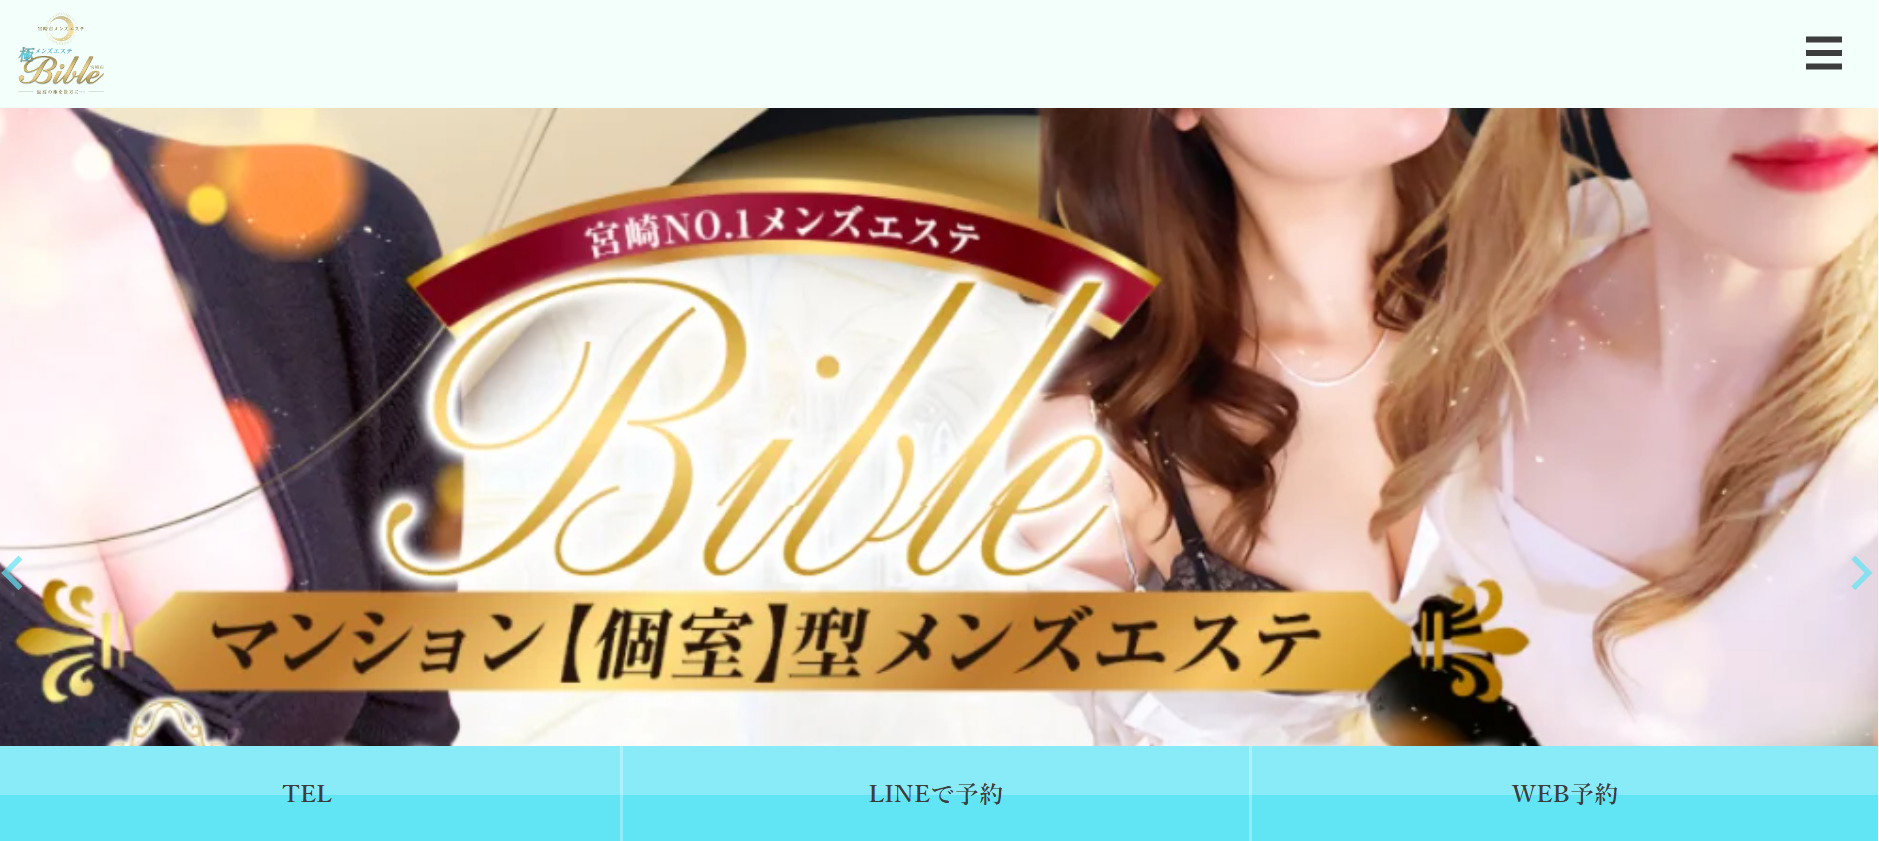 極メンズエステBible~バイブル~ 宮崎店のトップページ画像